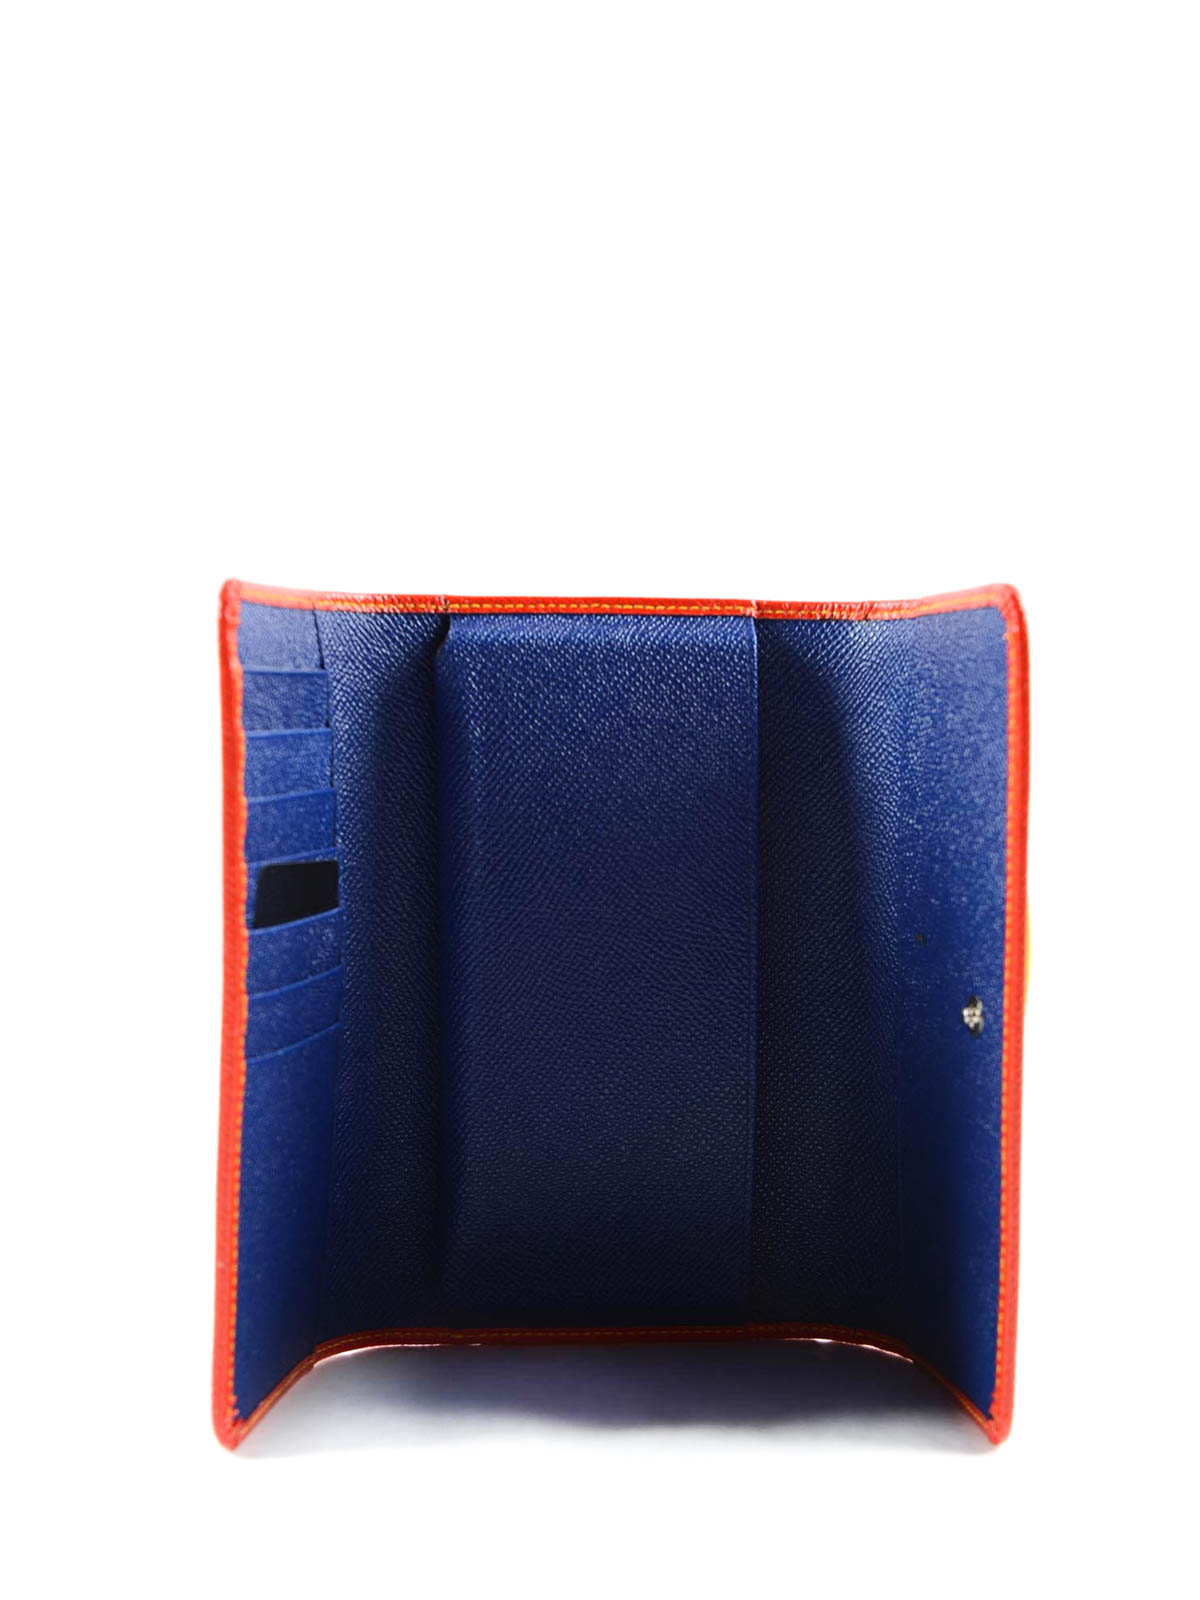 Dolce & Gabbana Dauphine Mini Von Bag Blue